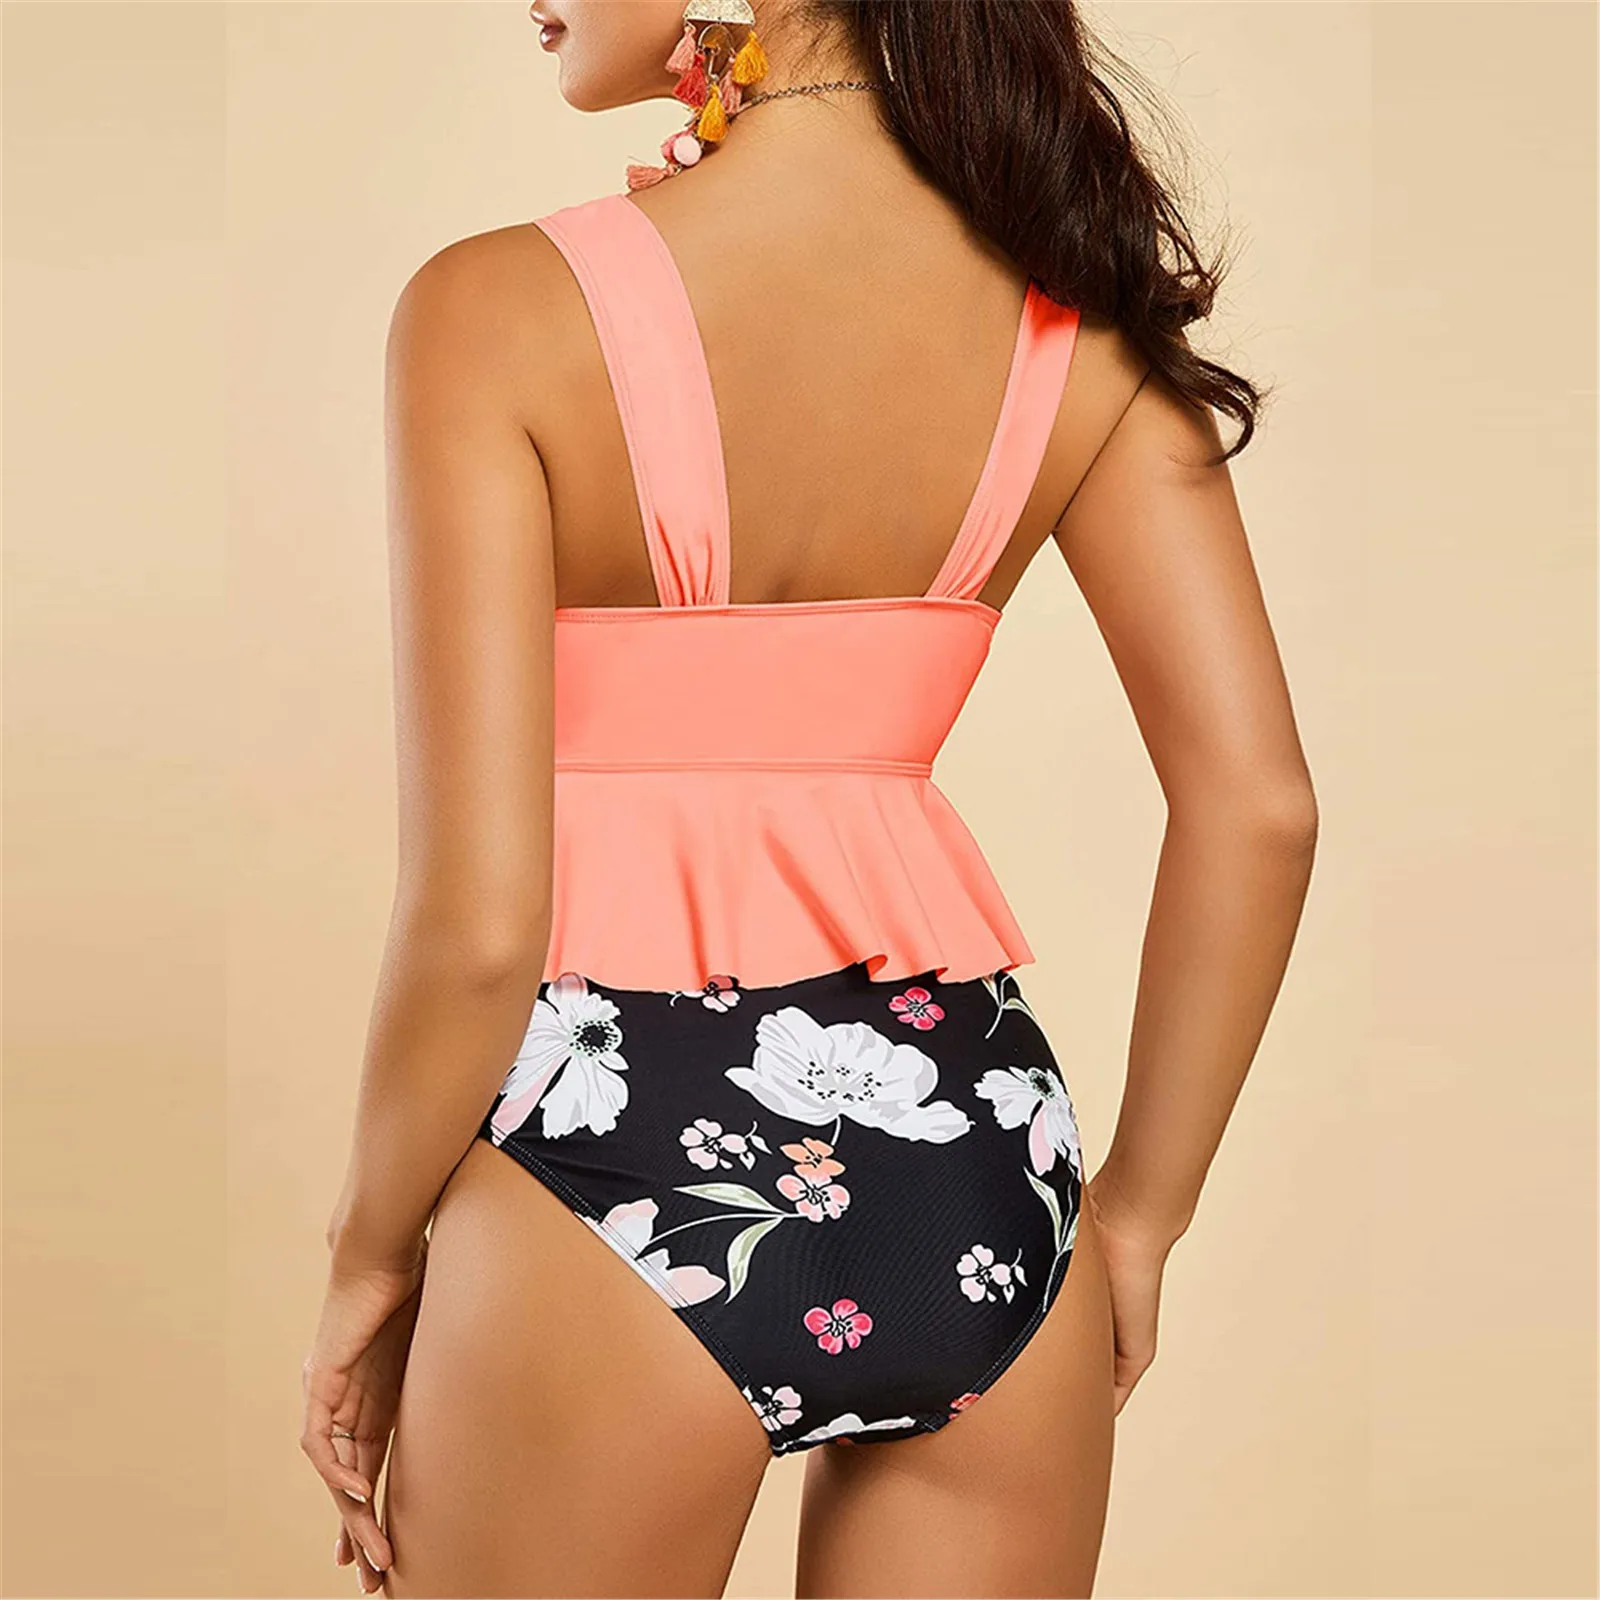 Women V-neck Split High Waist Bikini Ruffle Swimsuit Leaf Print Swimsuit Brazilian Summer Beach Bathing Suit Swim Wear 2pcs Sets cute swimsuits